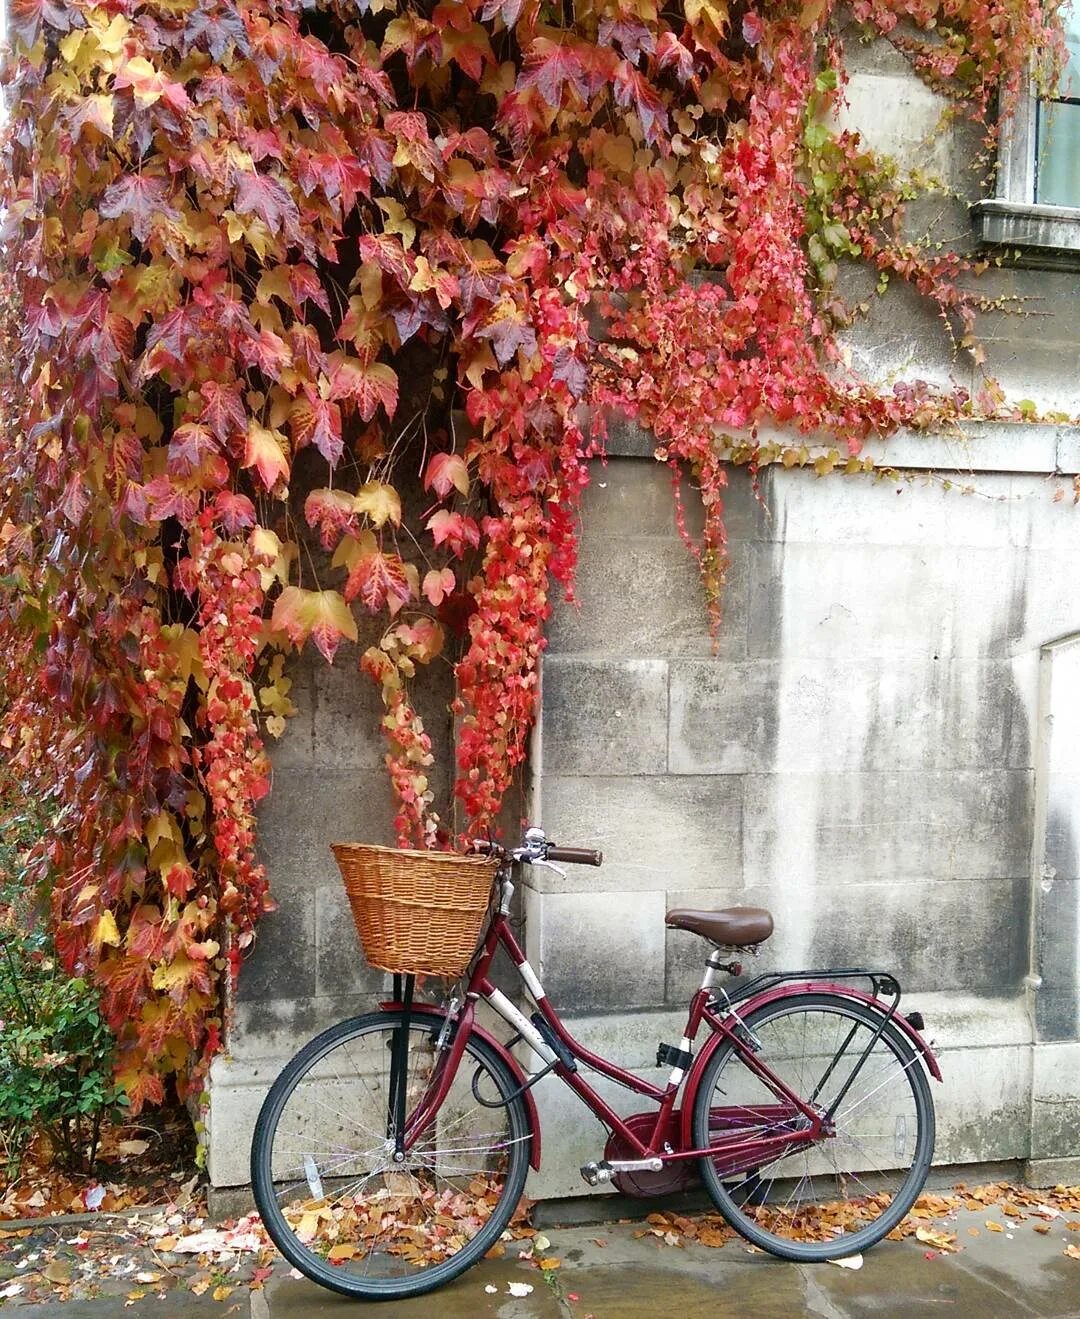 Hanna сделал(-а) публикацию в Instagram: “November in Cambridge: still plen...